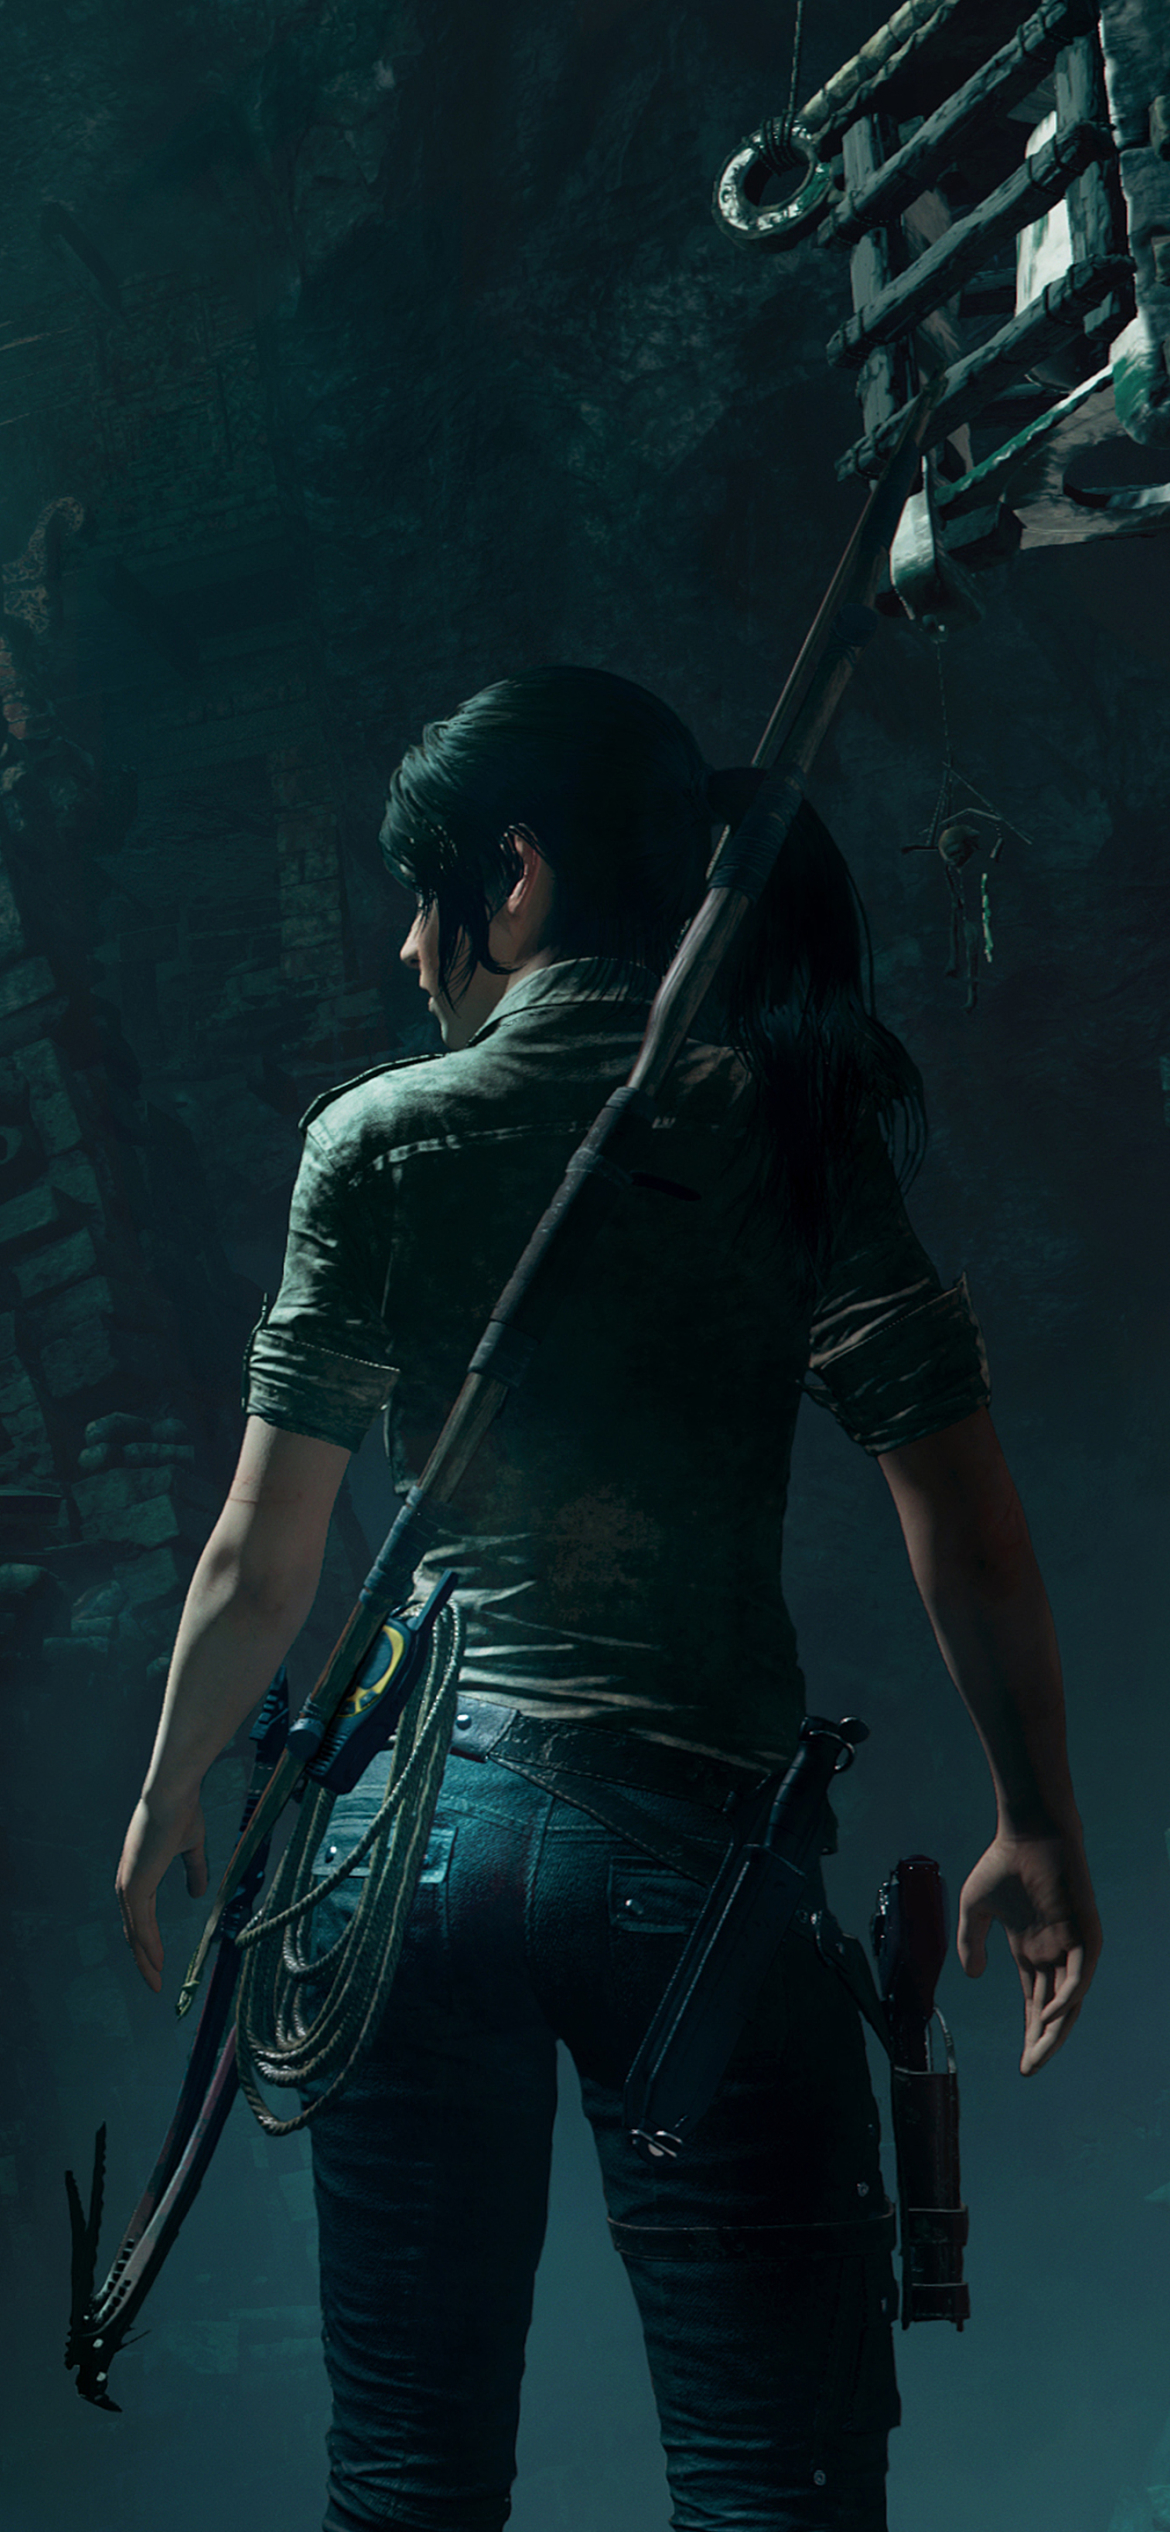 Handy-Wallpaper Tomb Raider, Computerspiele, Lara Croft, Shadow Of The Tomb Raider kostenlos herunterladen.